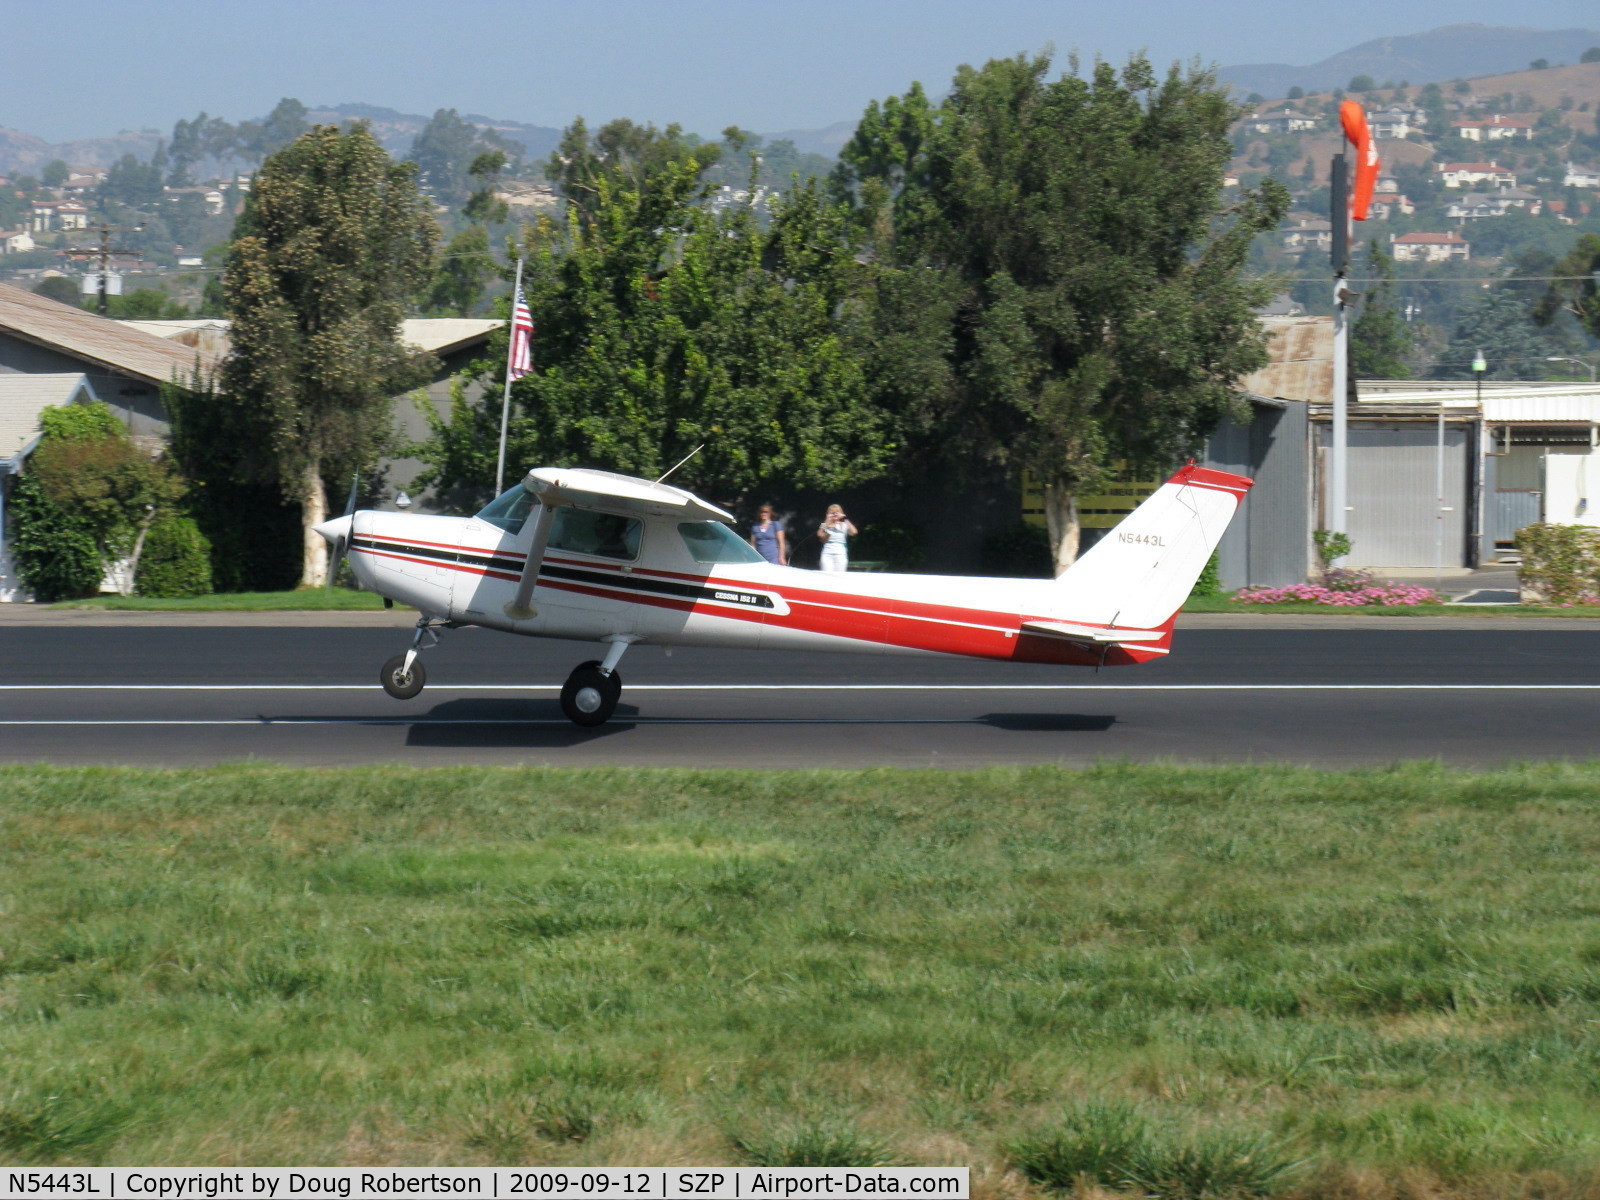 N5443L, 1980 Cessna 152 C/N 15284315, 1980 Cessna 152 II, Lycoming O-235-L2C 110 Hp, takeoff roll Rwy 22